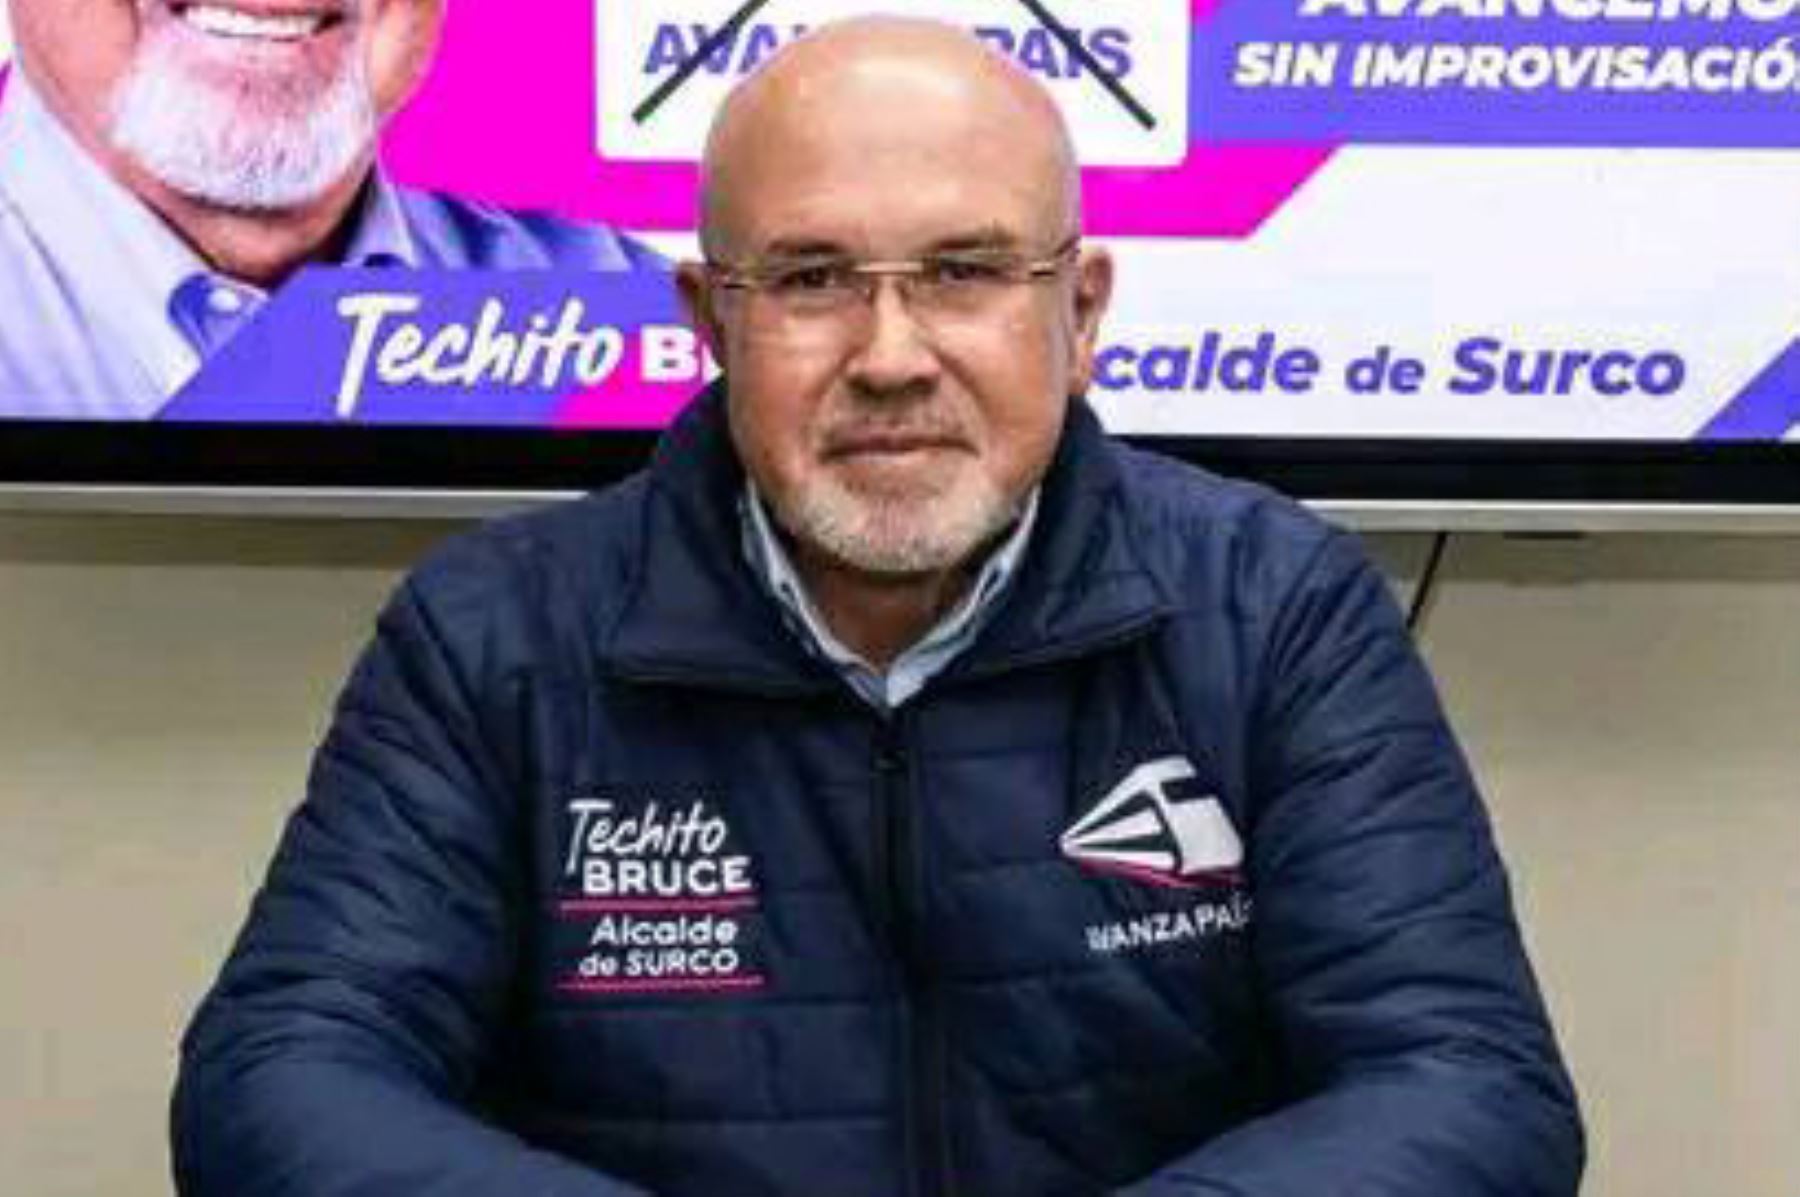 Carlos Bruce, conocido como "Techito" durante su gestión como ministro de Vivienda, sería el nuevo alcalde de Surco. Foto: ANDINA/Difusión